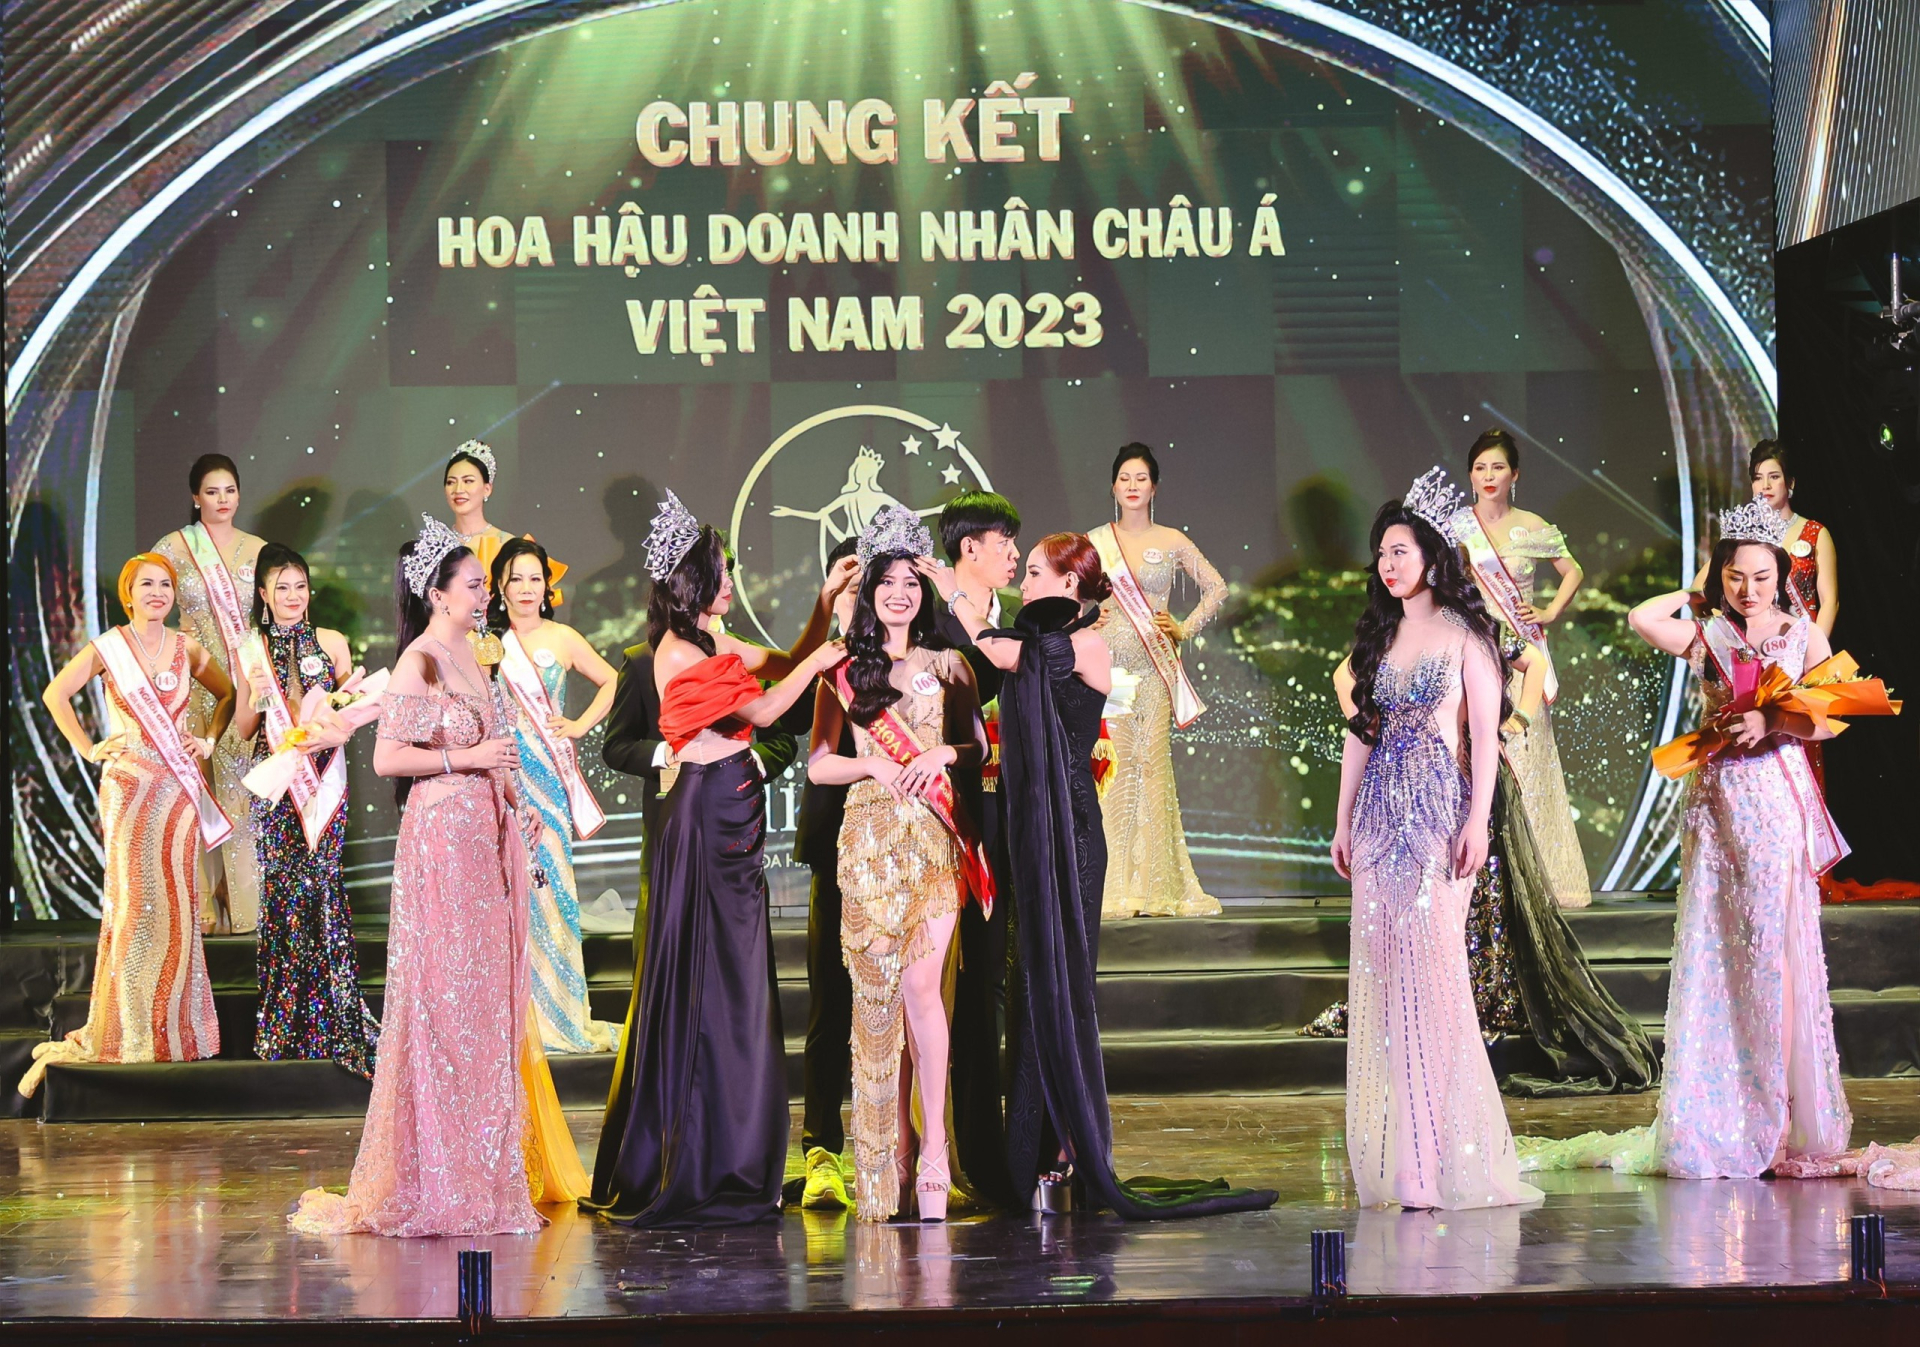 Kết quả chung cuộc, doanh nhân Lê Thị Thơ đăng quang ngôi vị Hoa hậu Doanh nhân Châu Á Việt Nam 2023.